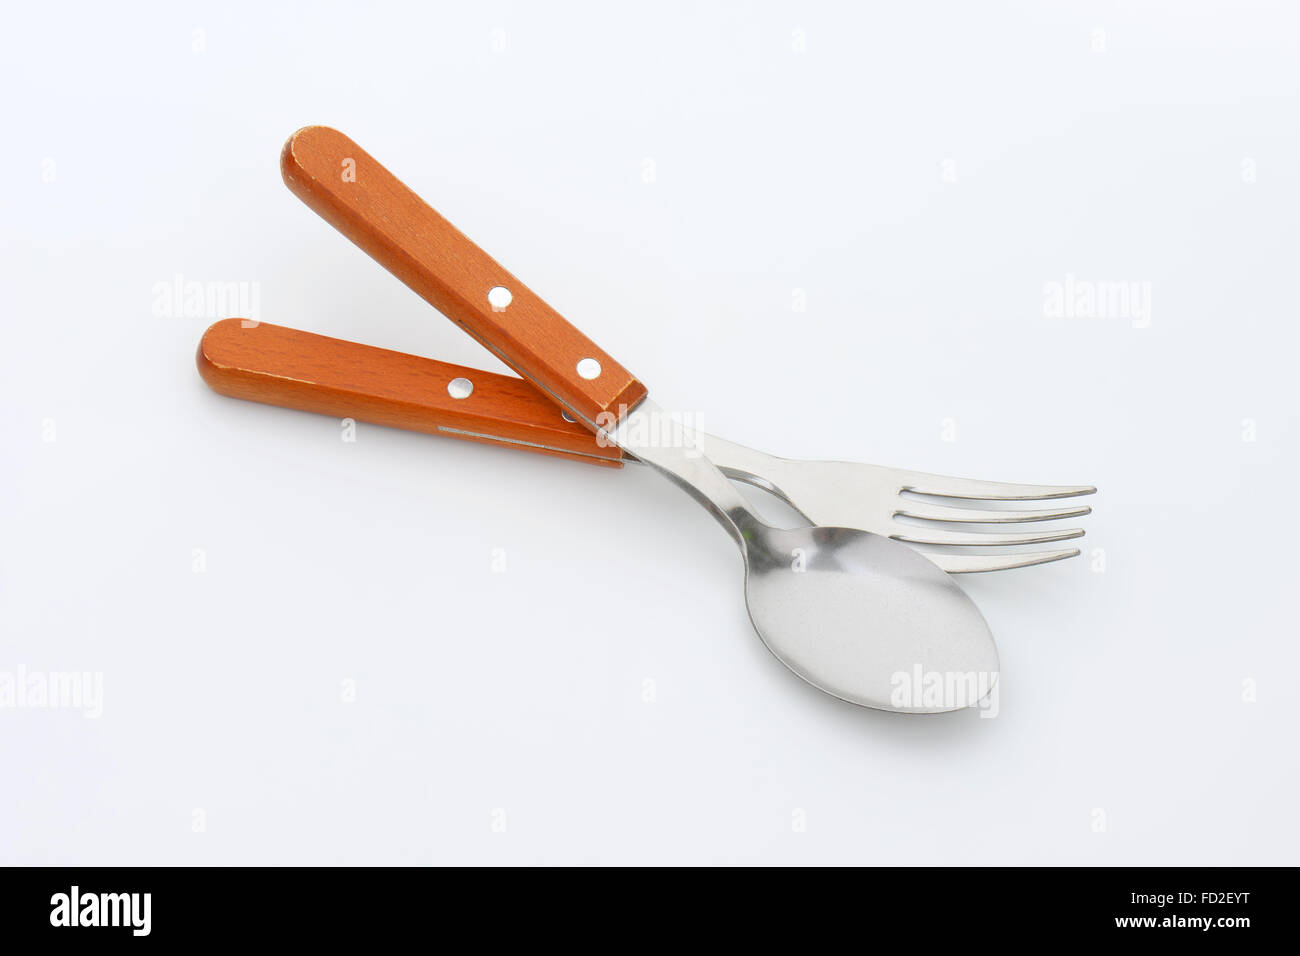 La cena cucchiaio e forchetta con impugnature in legno Foto Stock